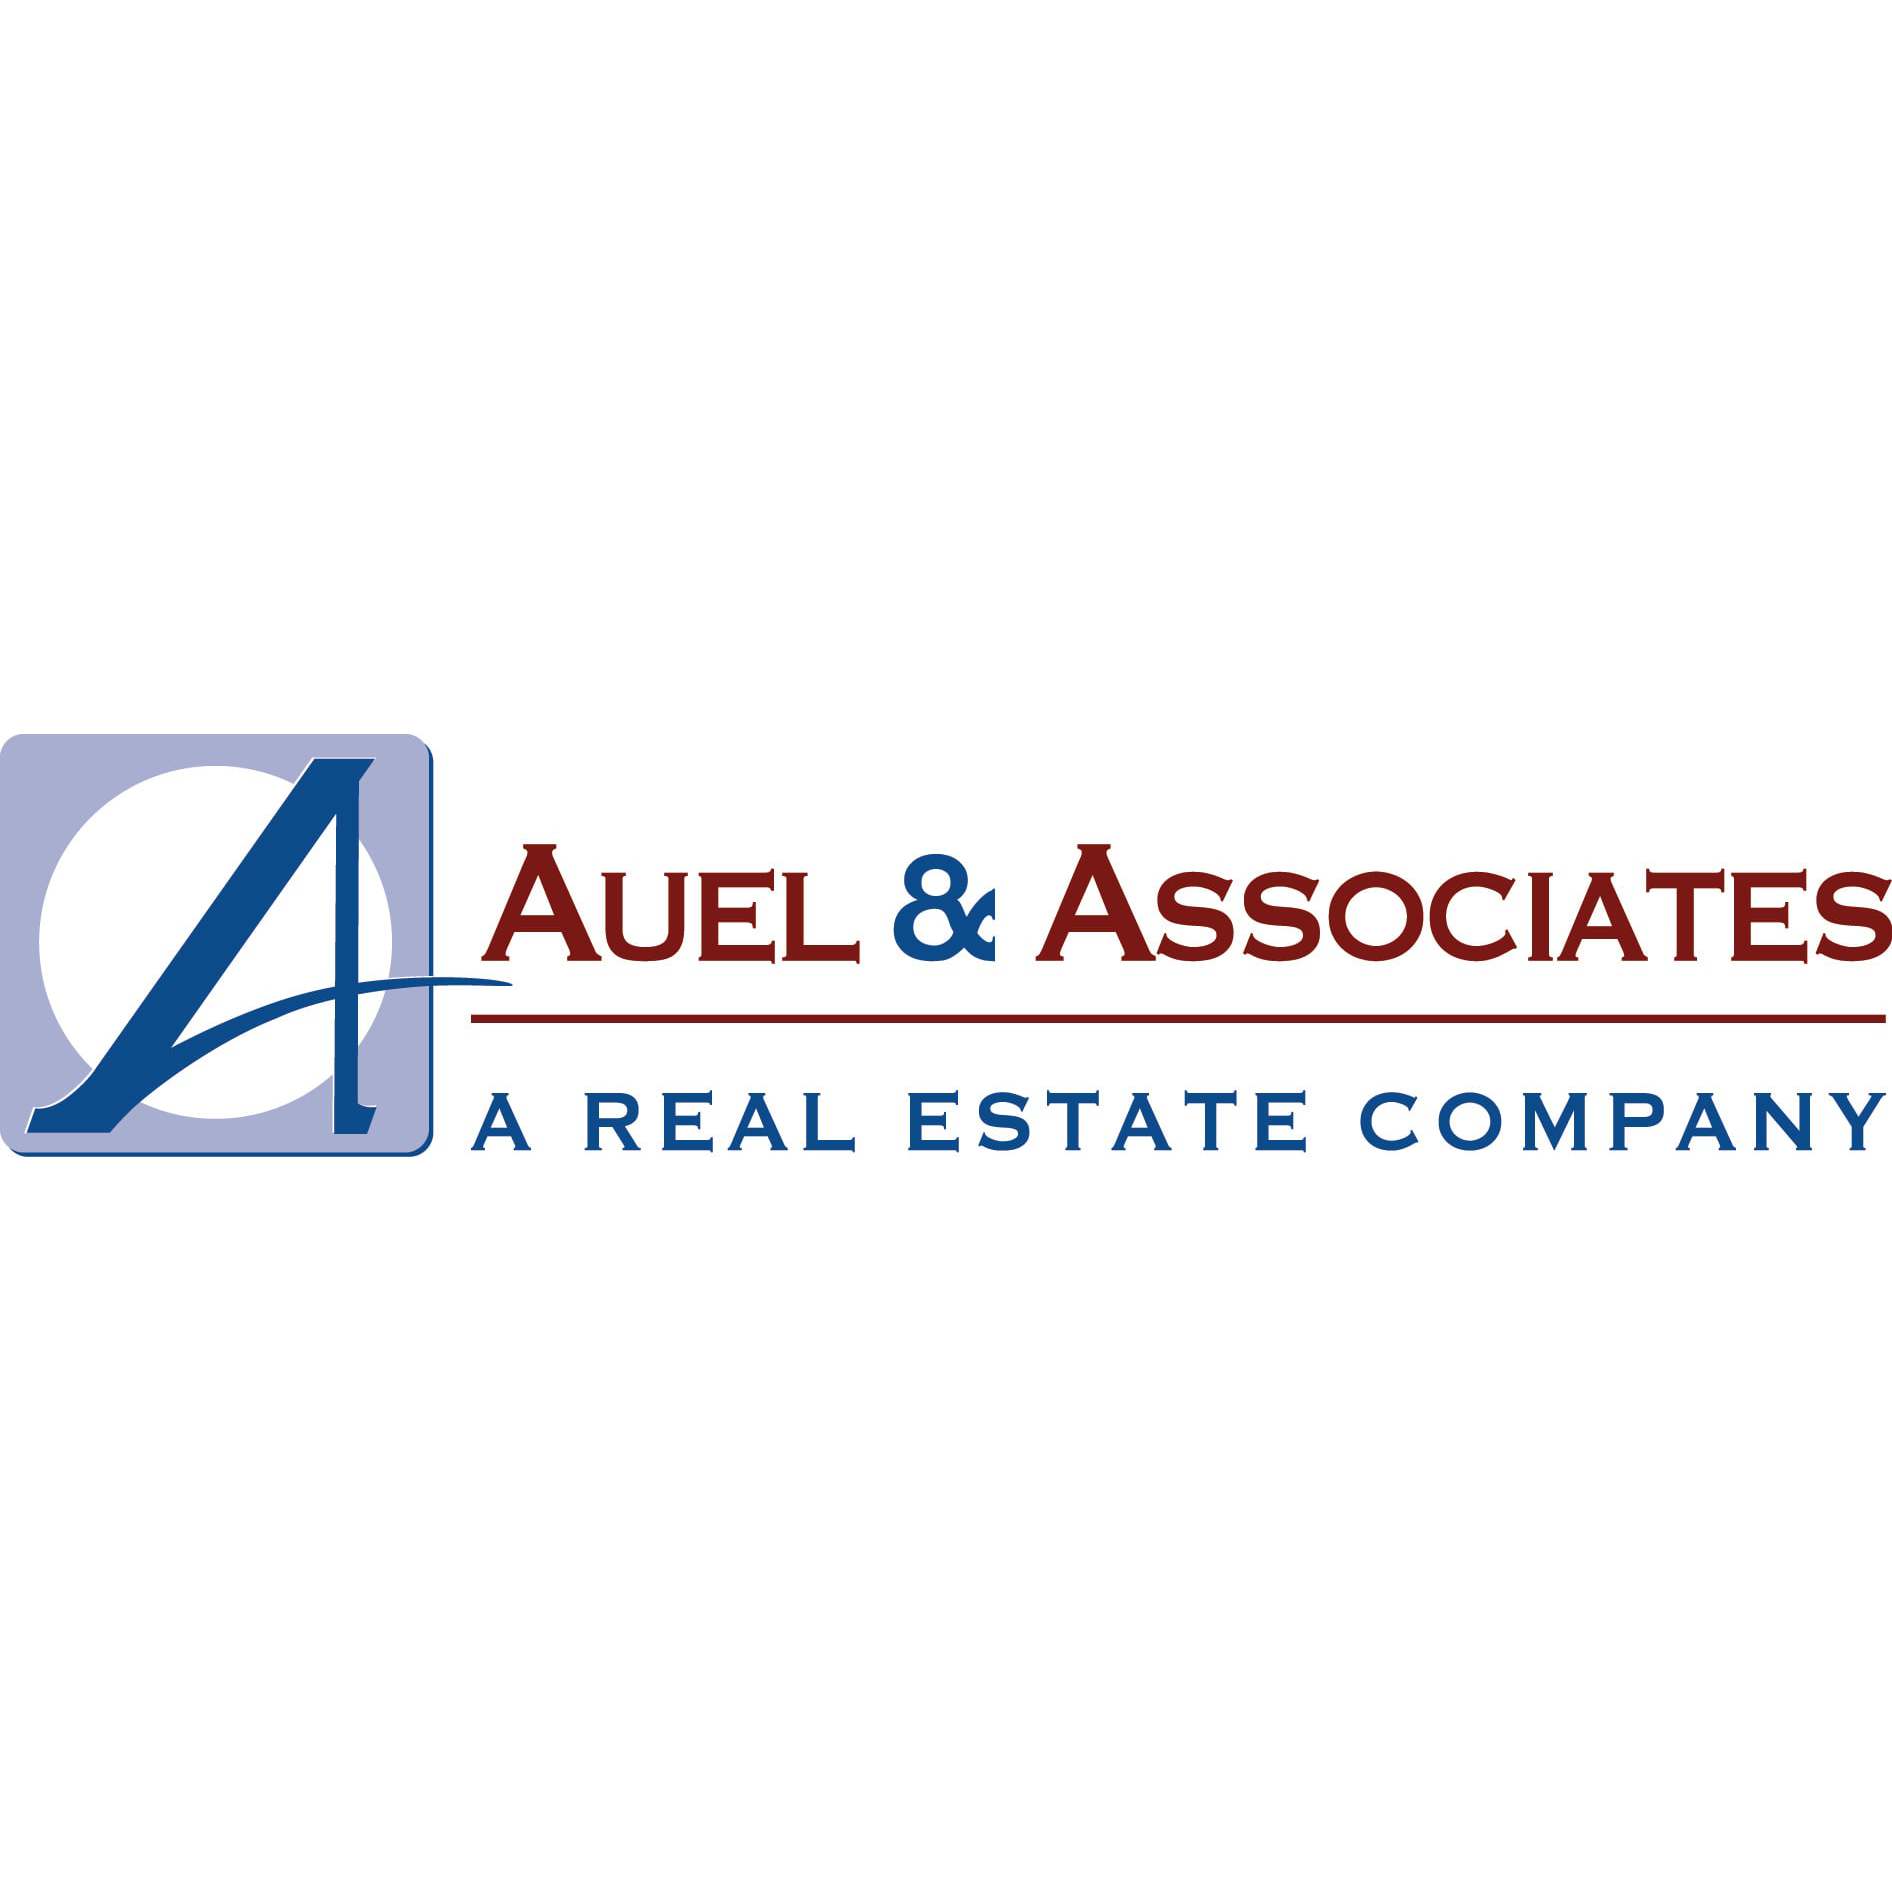 Auel & Associates